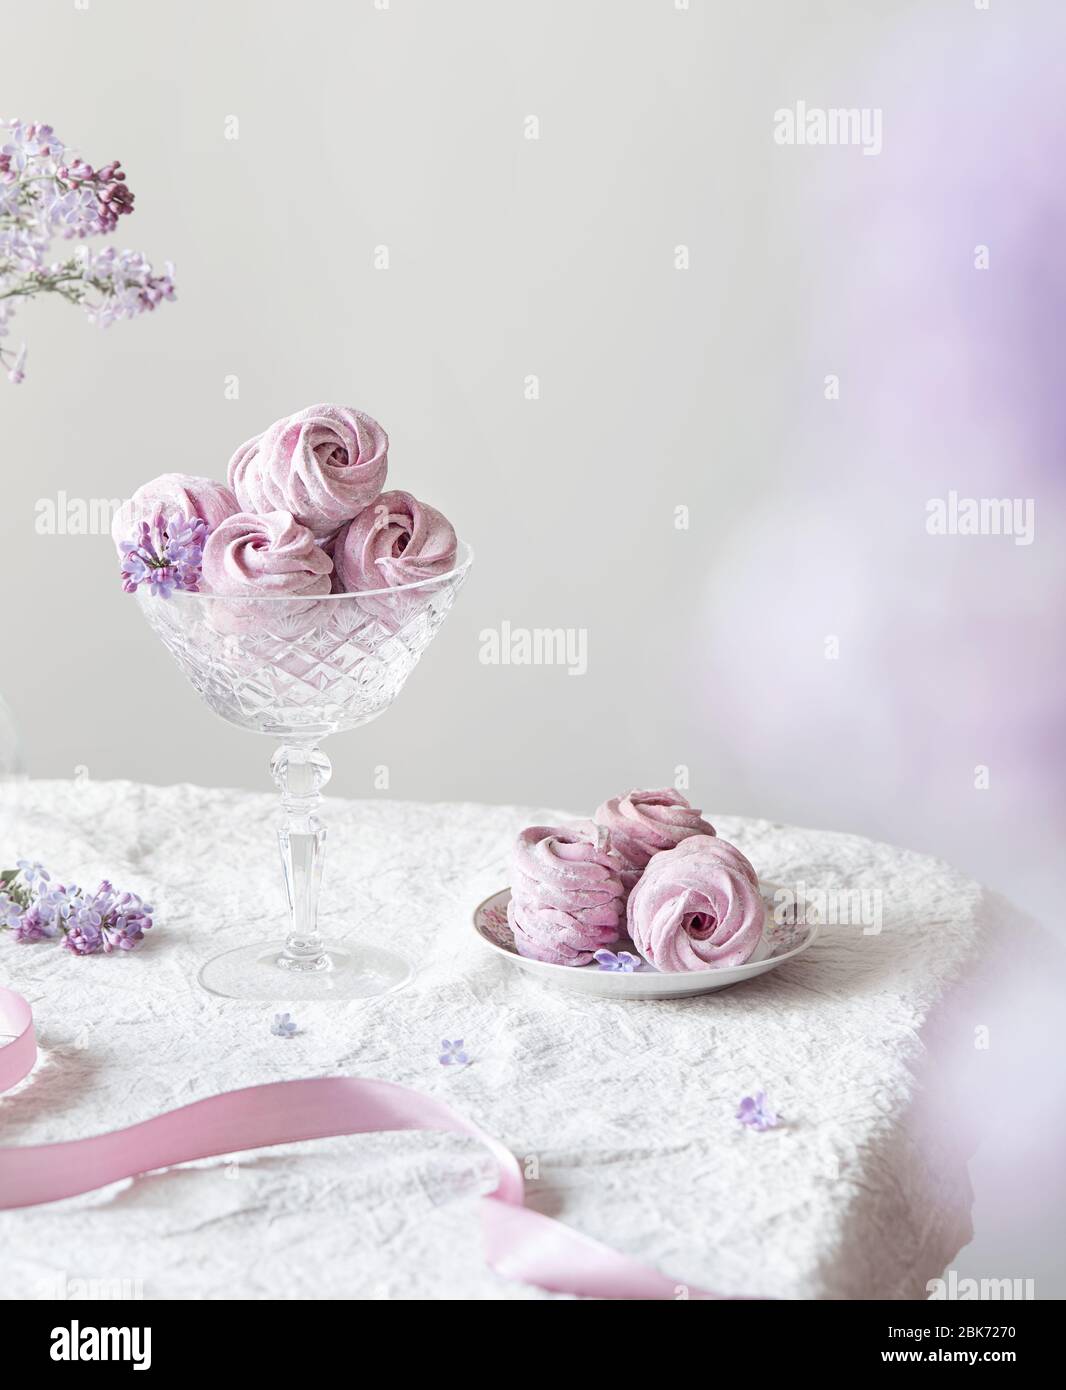 Violett süß hausgemachte Zephyr oder Marshmallow aus schwarzer Johannisbeere um lila Blüten auf weißem Tischtuch und hellen Hintergrund Stockfoto